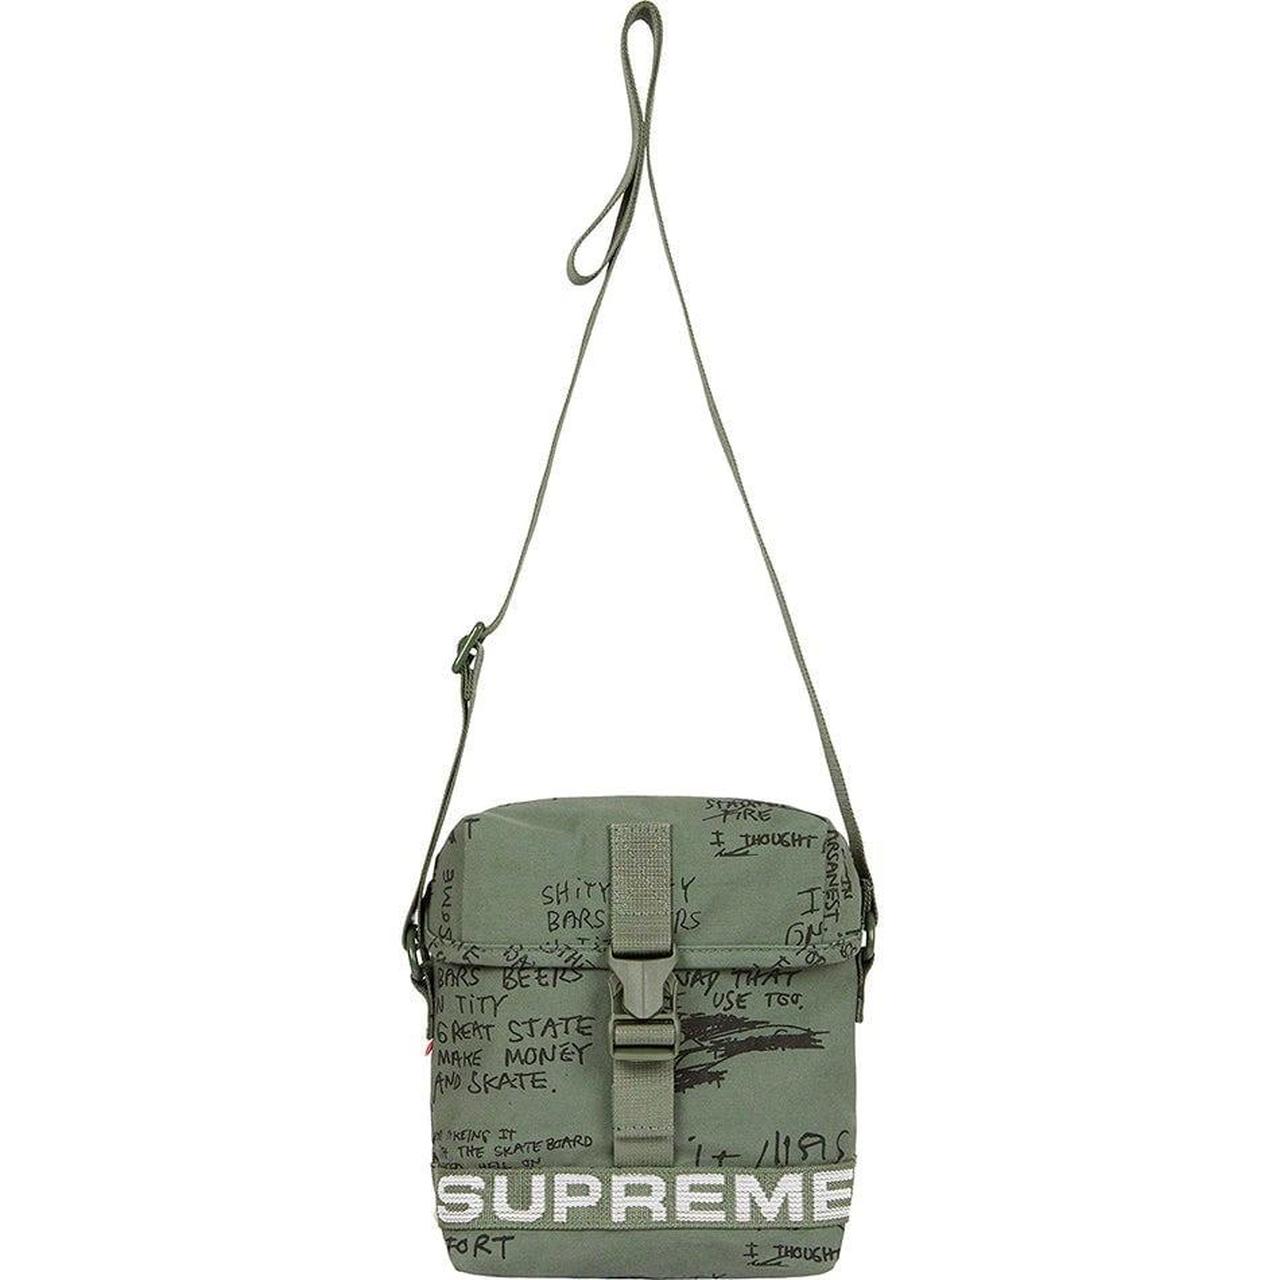 Supreme Men's Field Side Bag